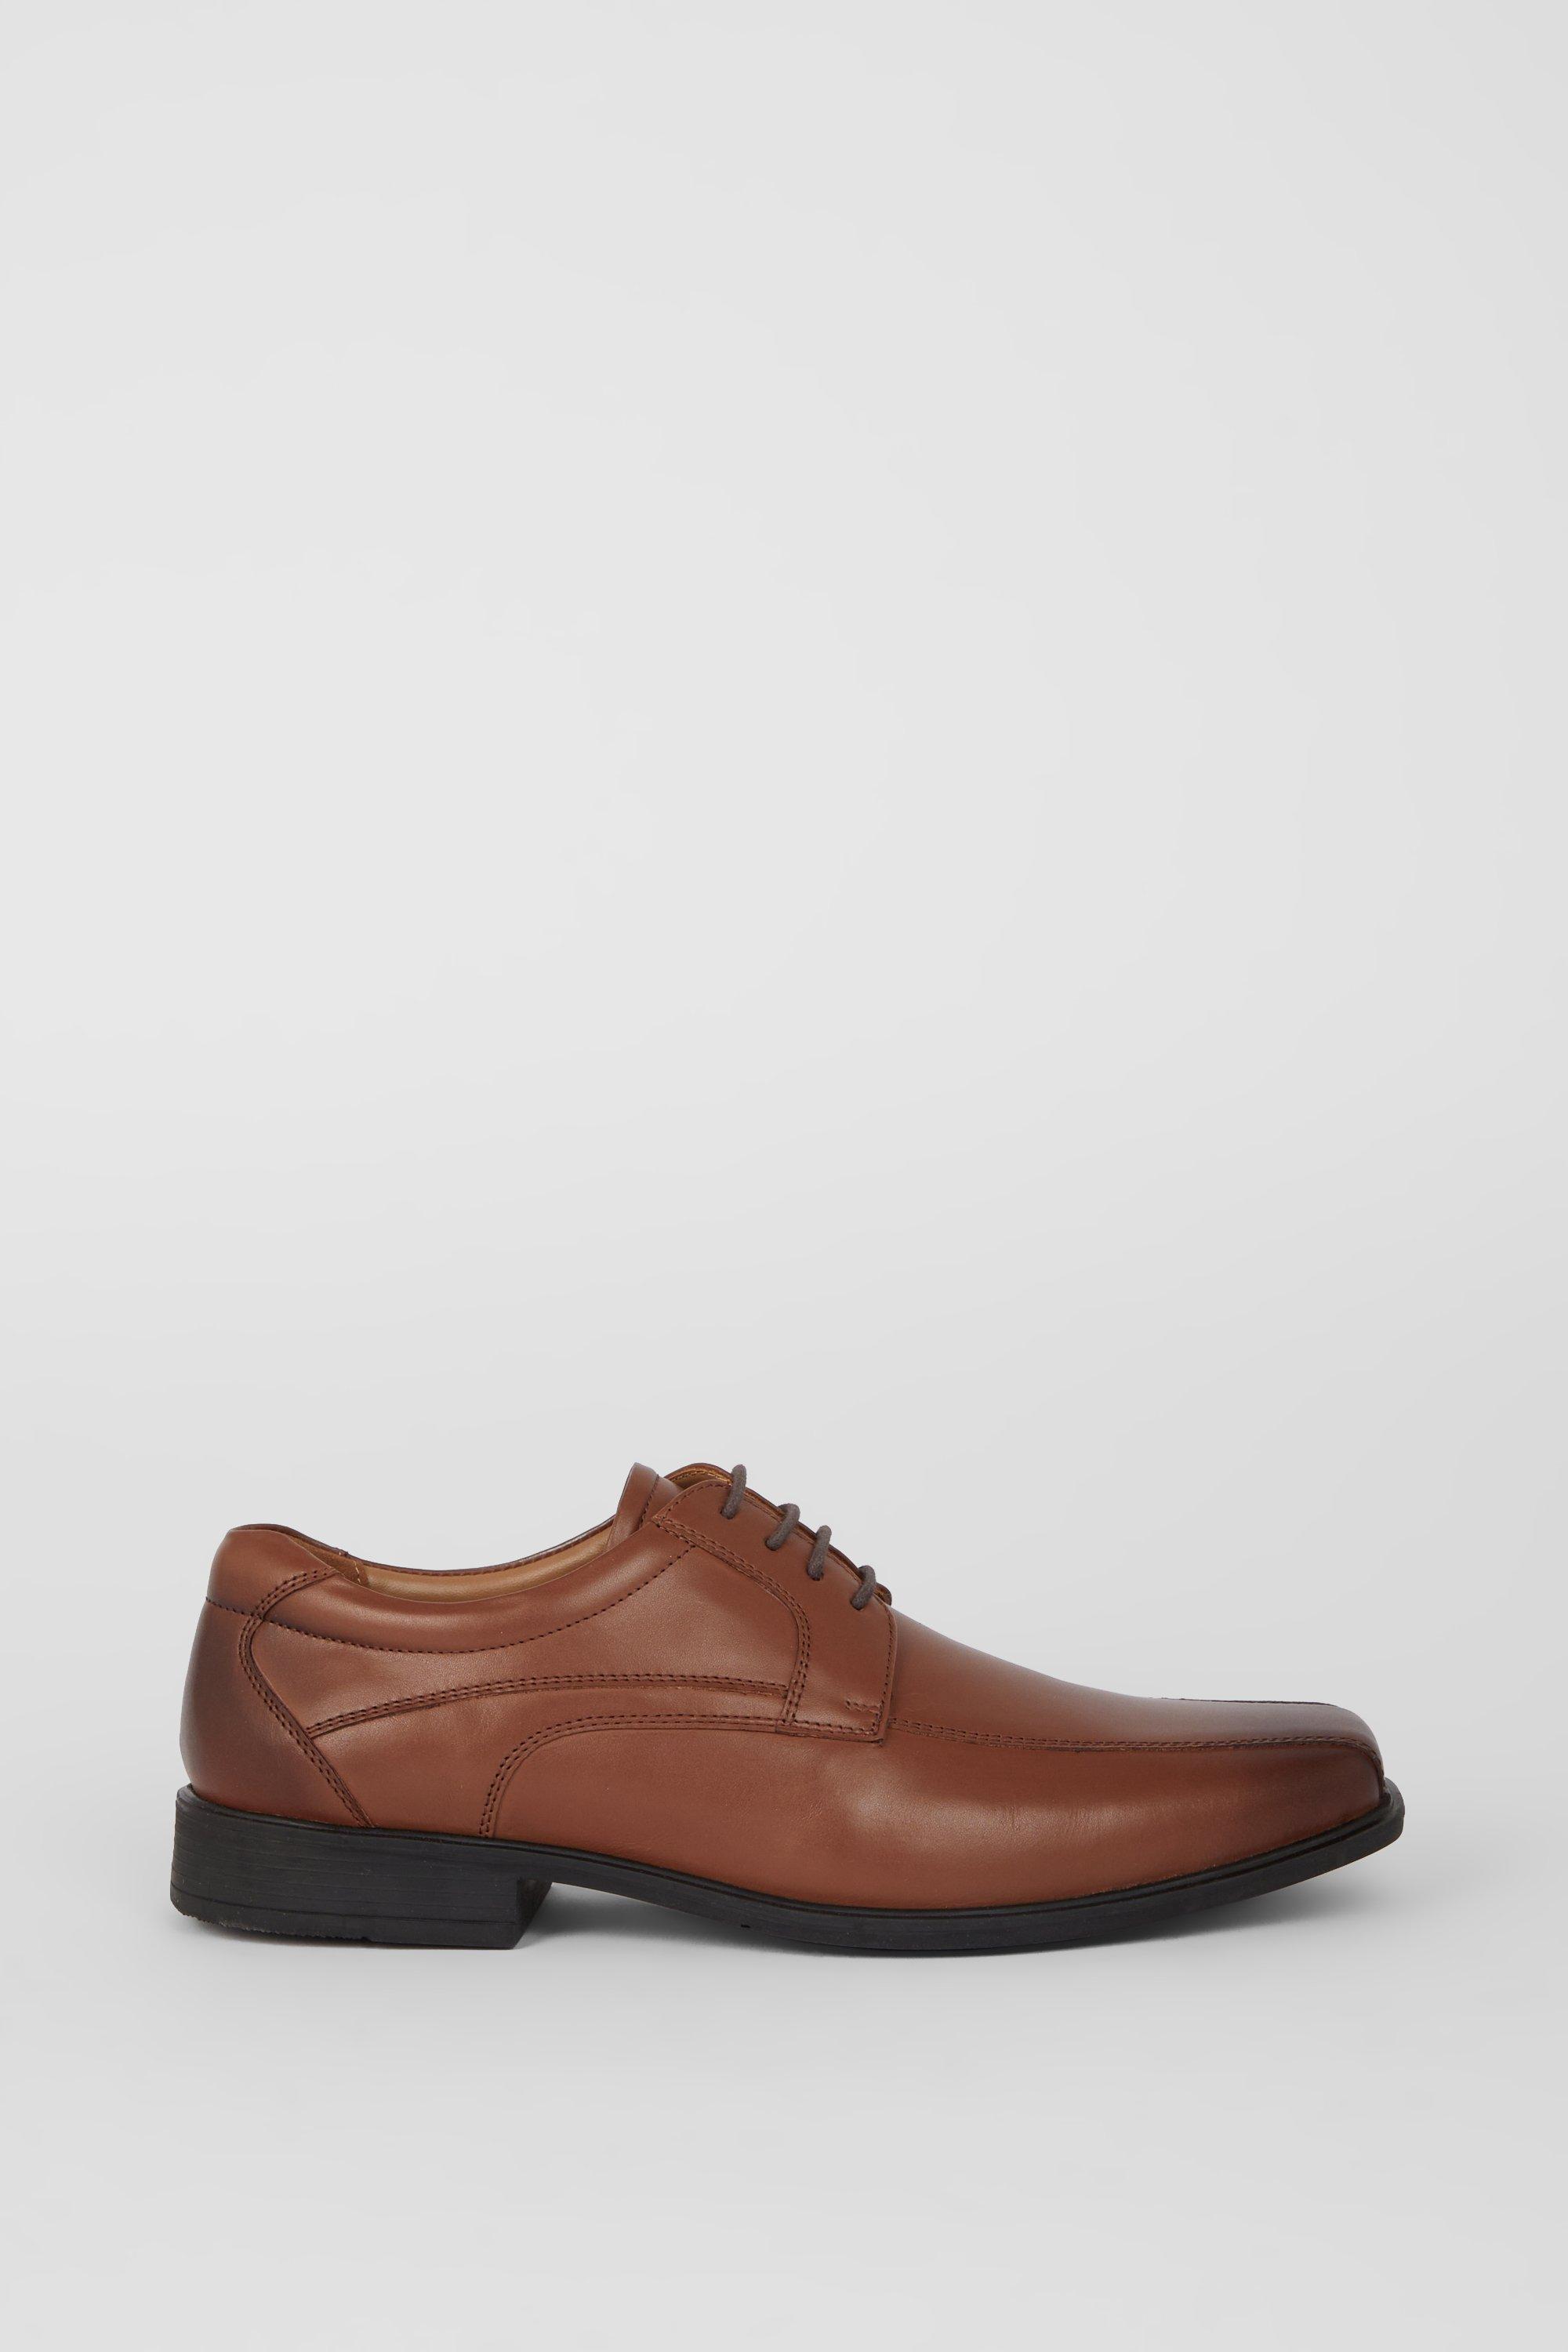 Кожаные туфли Airsoft Comfort на шнуровке Debenhams, коричневый ботинки дерби кожаные на шнуровке 39 черный